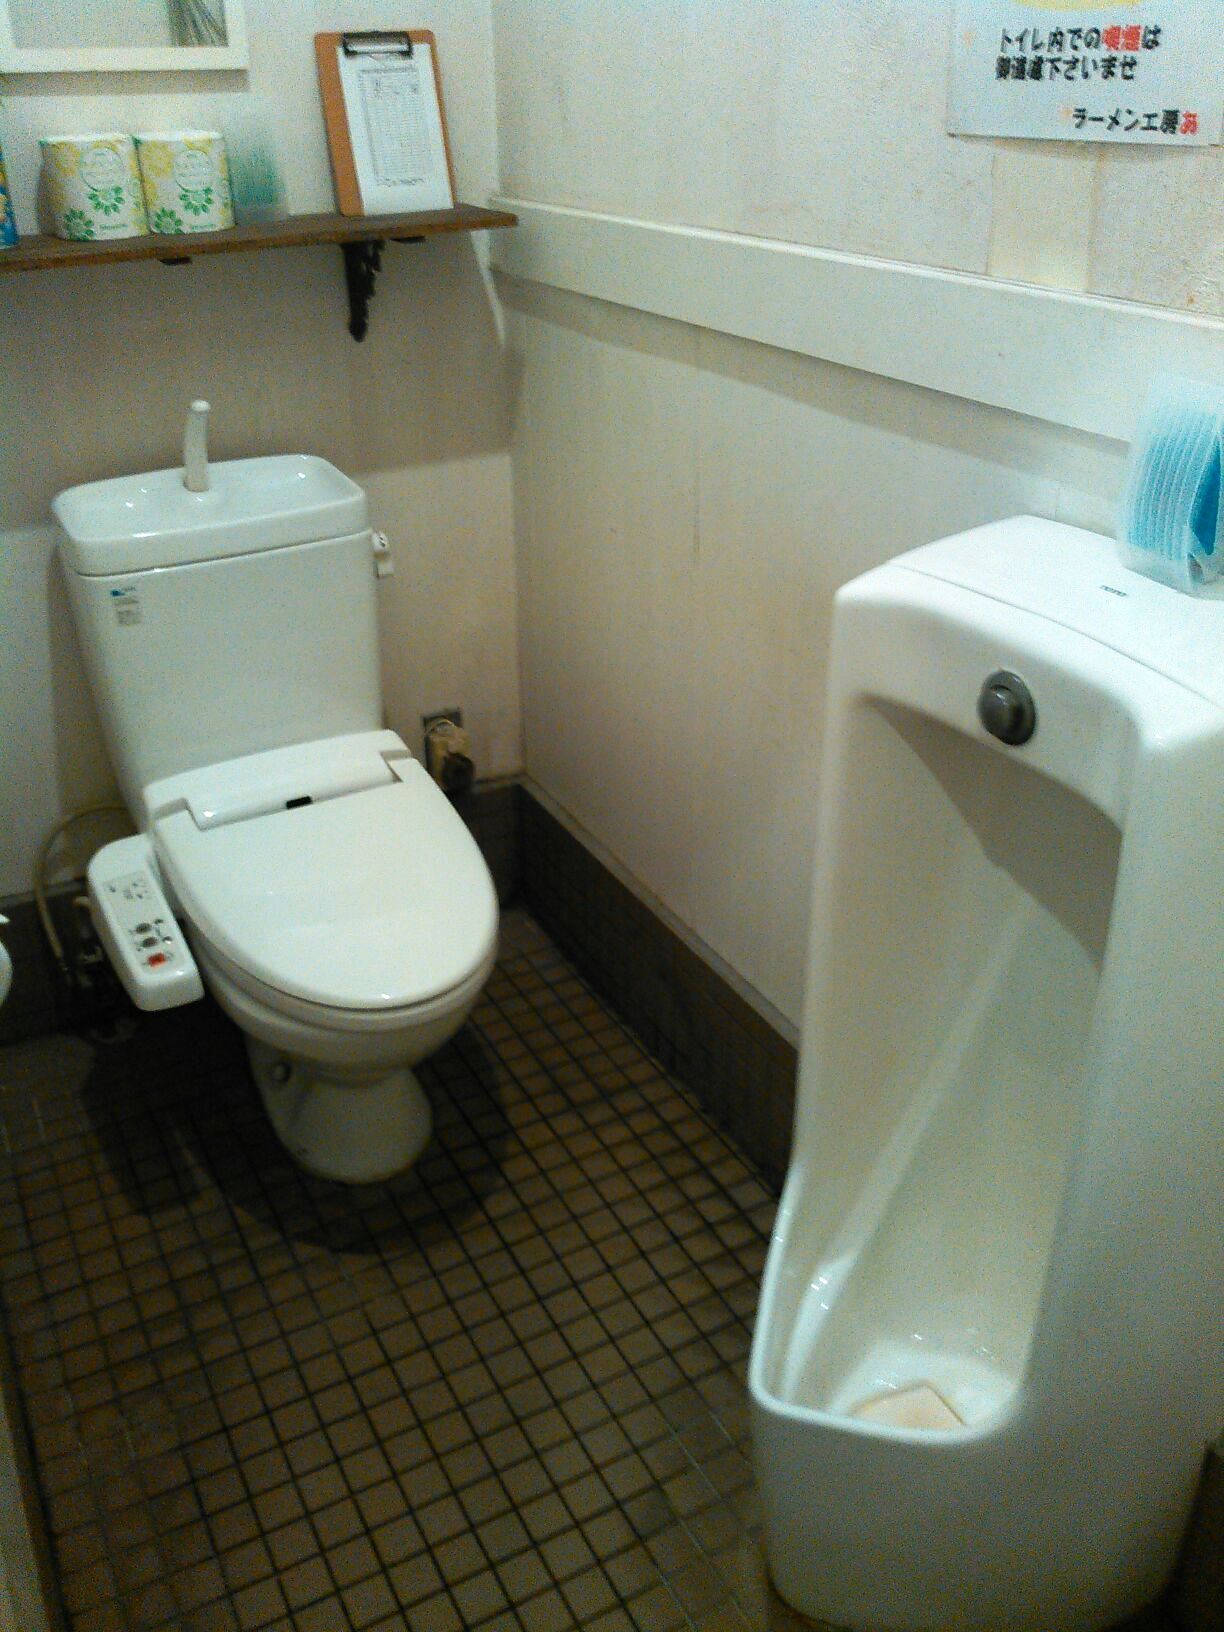 兼用 トイレ 男女 「職場のトイレが男女共用で苦痛」法律上は区別して設置